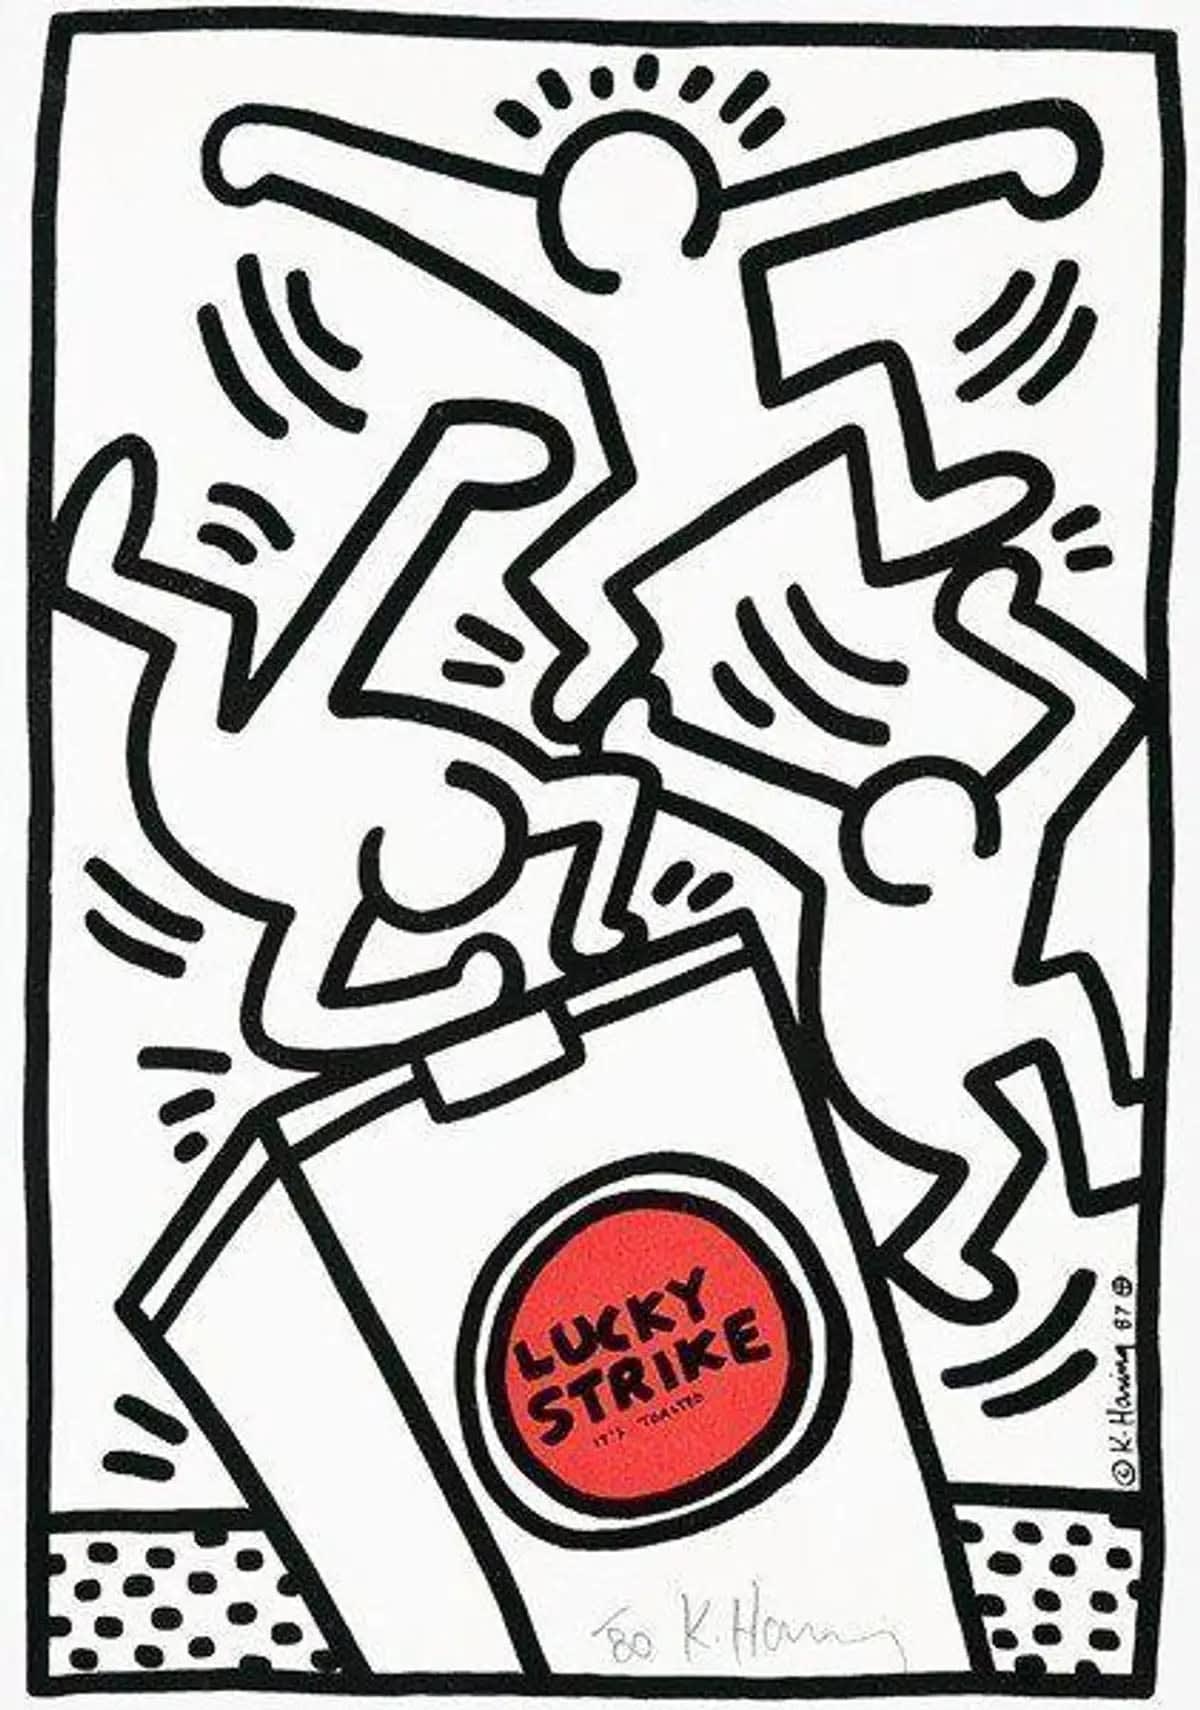 【限定SALE格安】美品 Keith Haring キース・ヘリング シルクスクリーン 板画 ♯検索 絵 油絵 絵画 画廊 額縁 ピカソ ゴッホ バスキア バンクシー シルクスクリーン